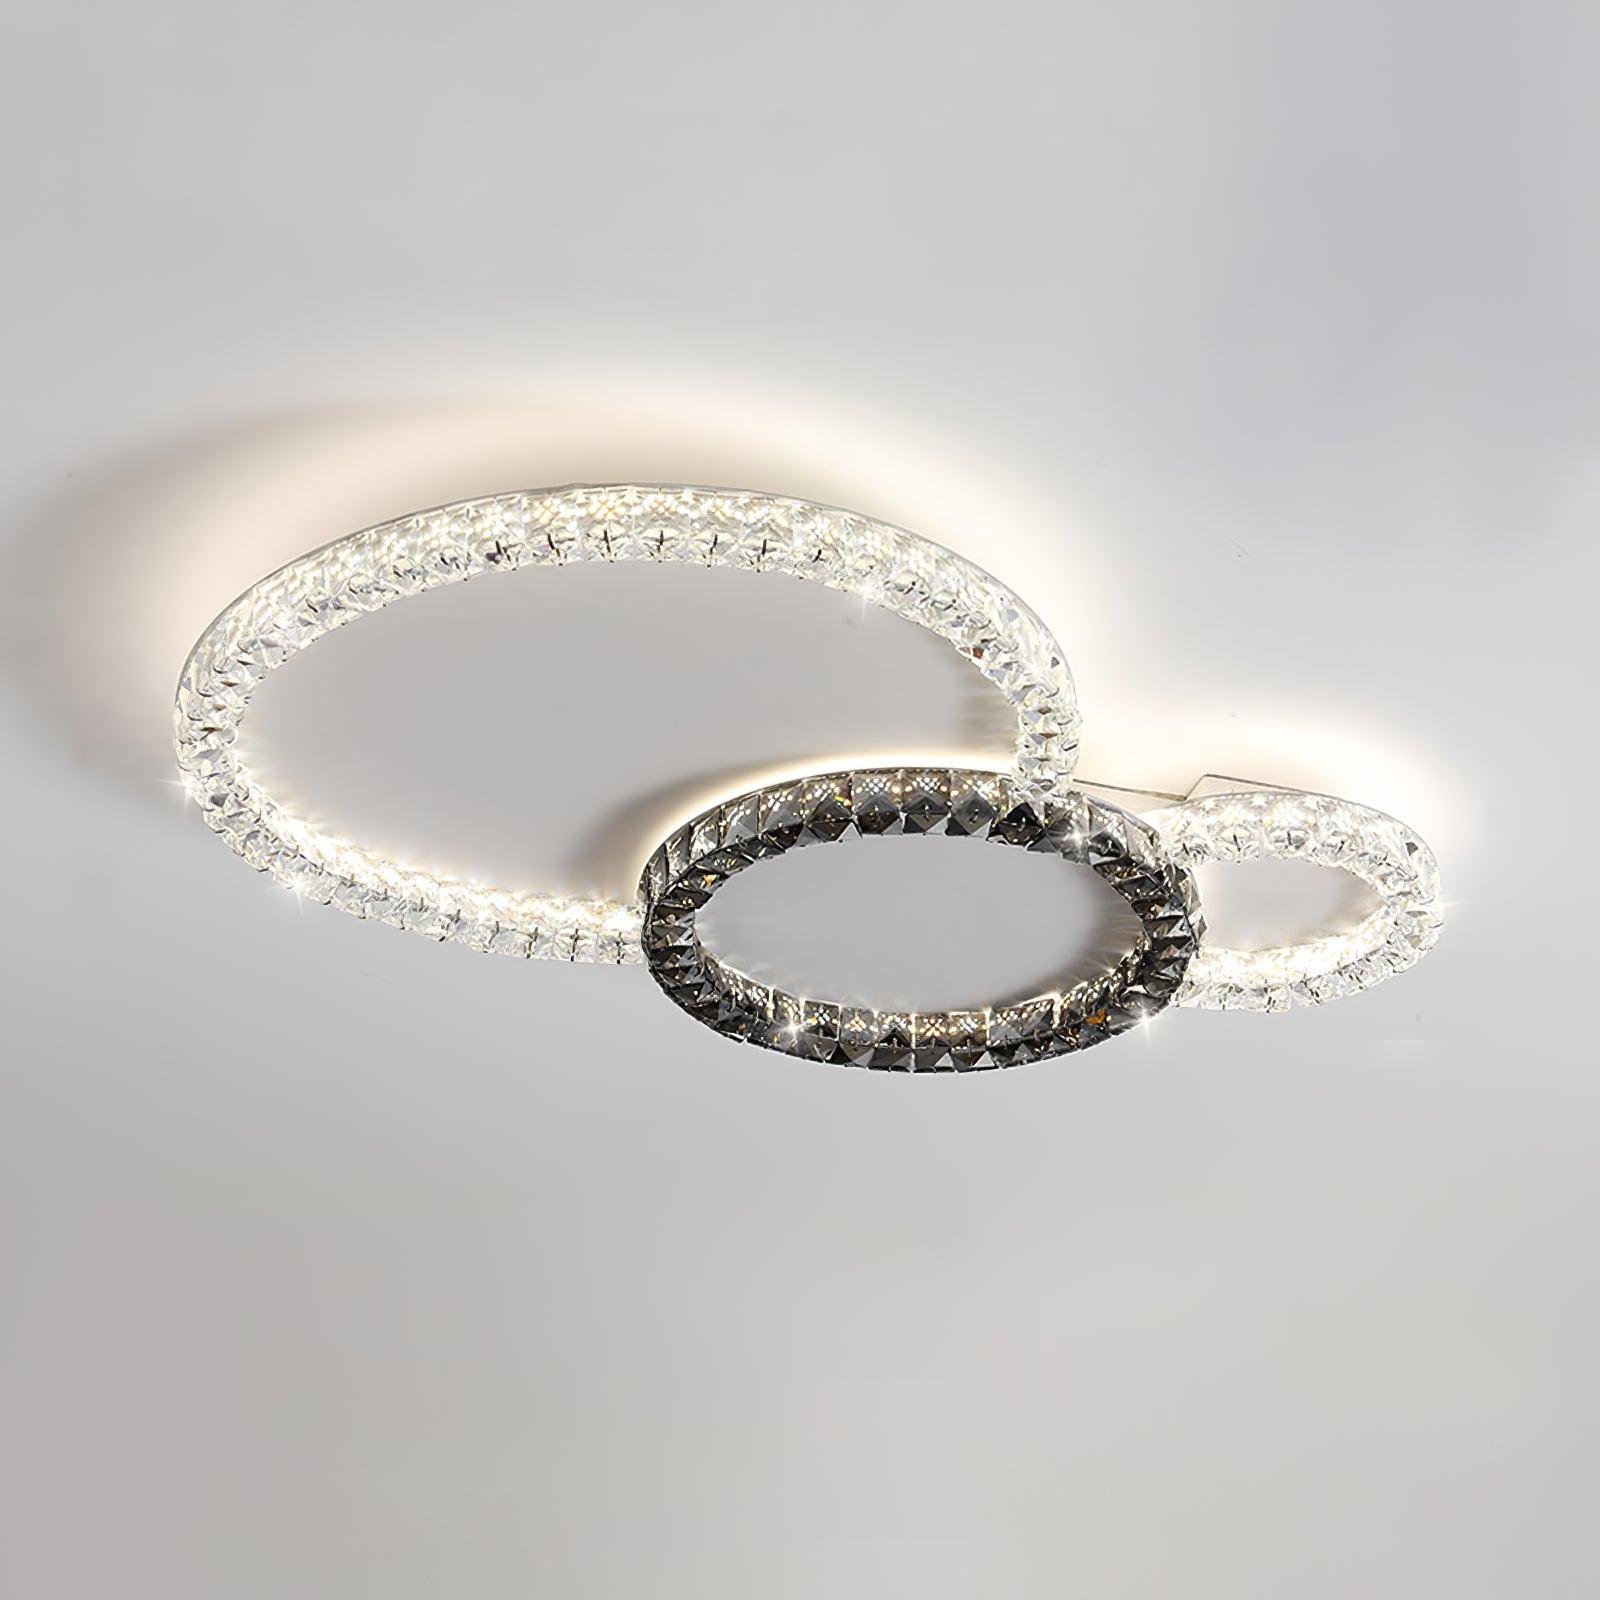 Ceiling Lamp: Oraylia, Dimensions: L 39.4″ x W 29.1″ x H 2.2″ (L 100cm x W 74cm x H 5.5cm), Color: White+Black, Light: Trichromatic.